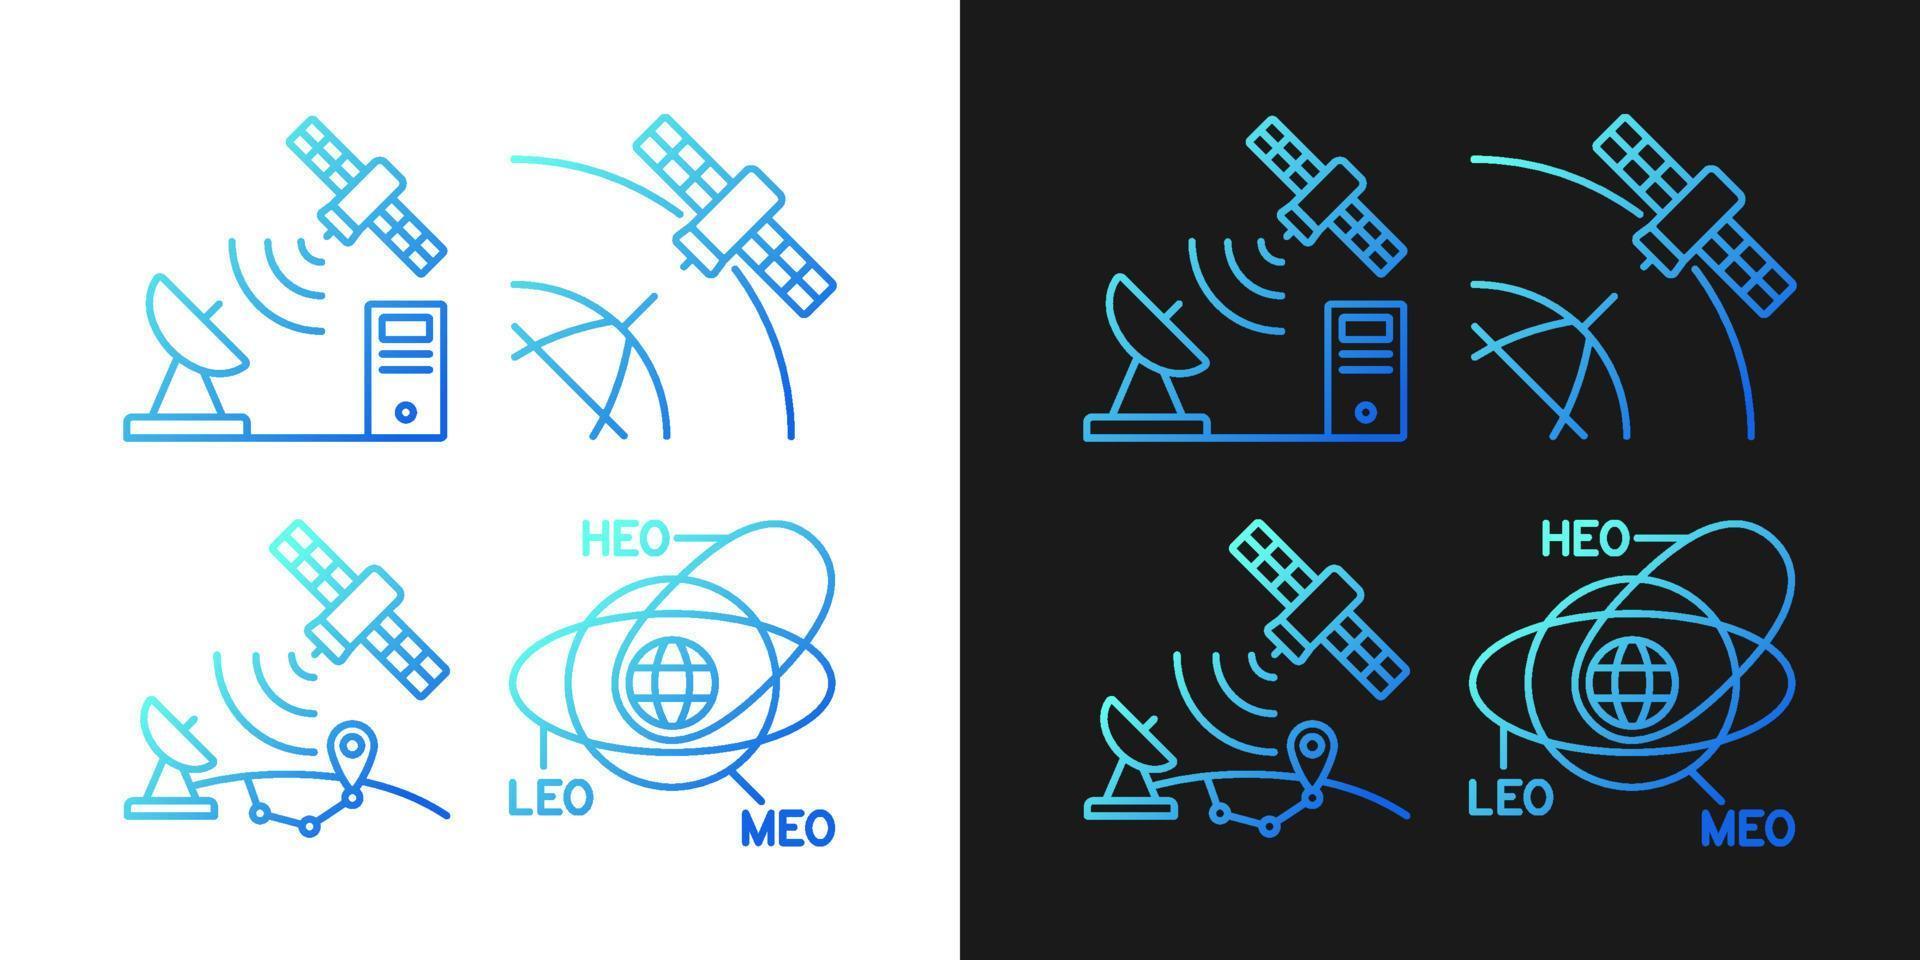 icone del gradiente di radionavigazione satellitare impostate per la modalità scura e chiara. fascio di simboli di contorno a linea sottile. raccolta di illustrazioni di contorno vettoriale isolata in bianco e nero